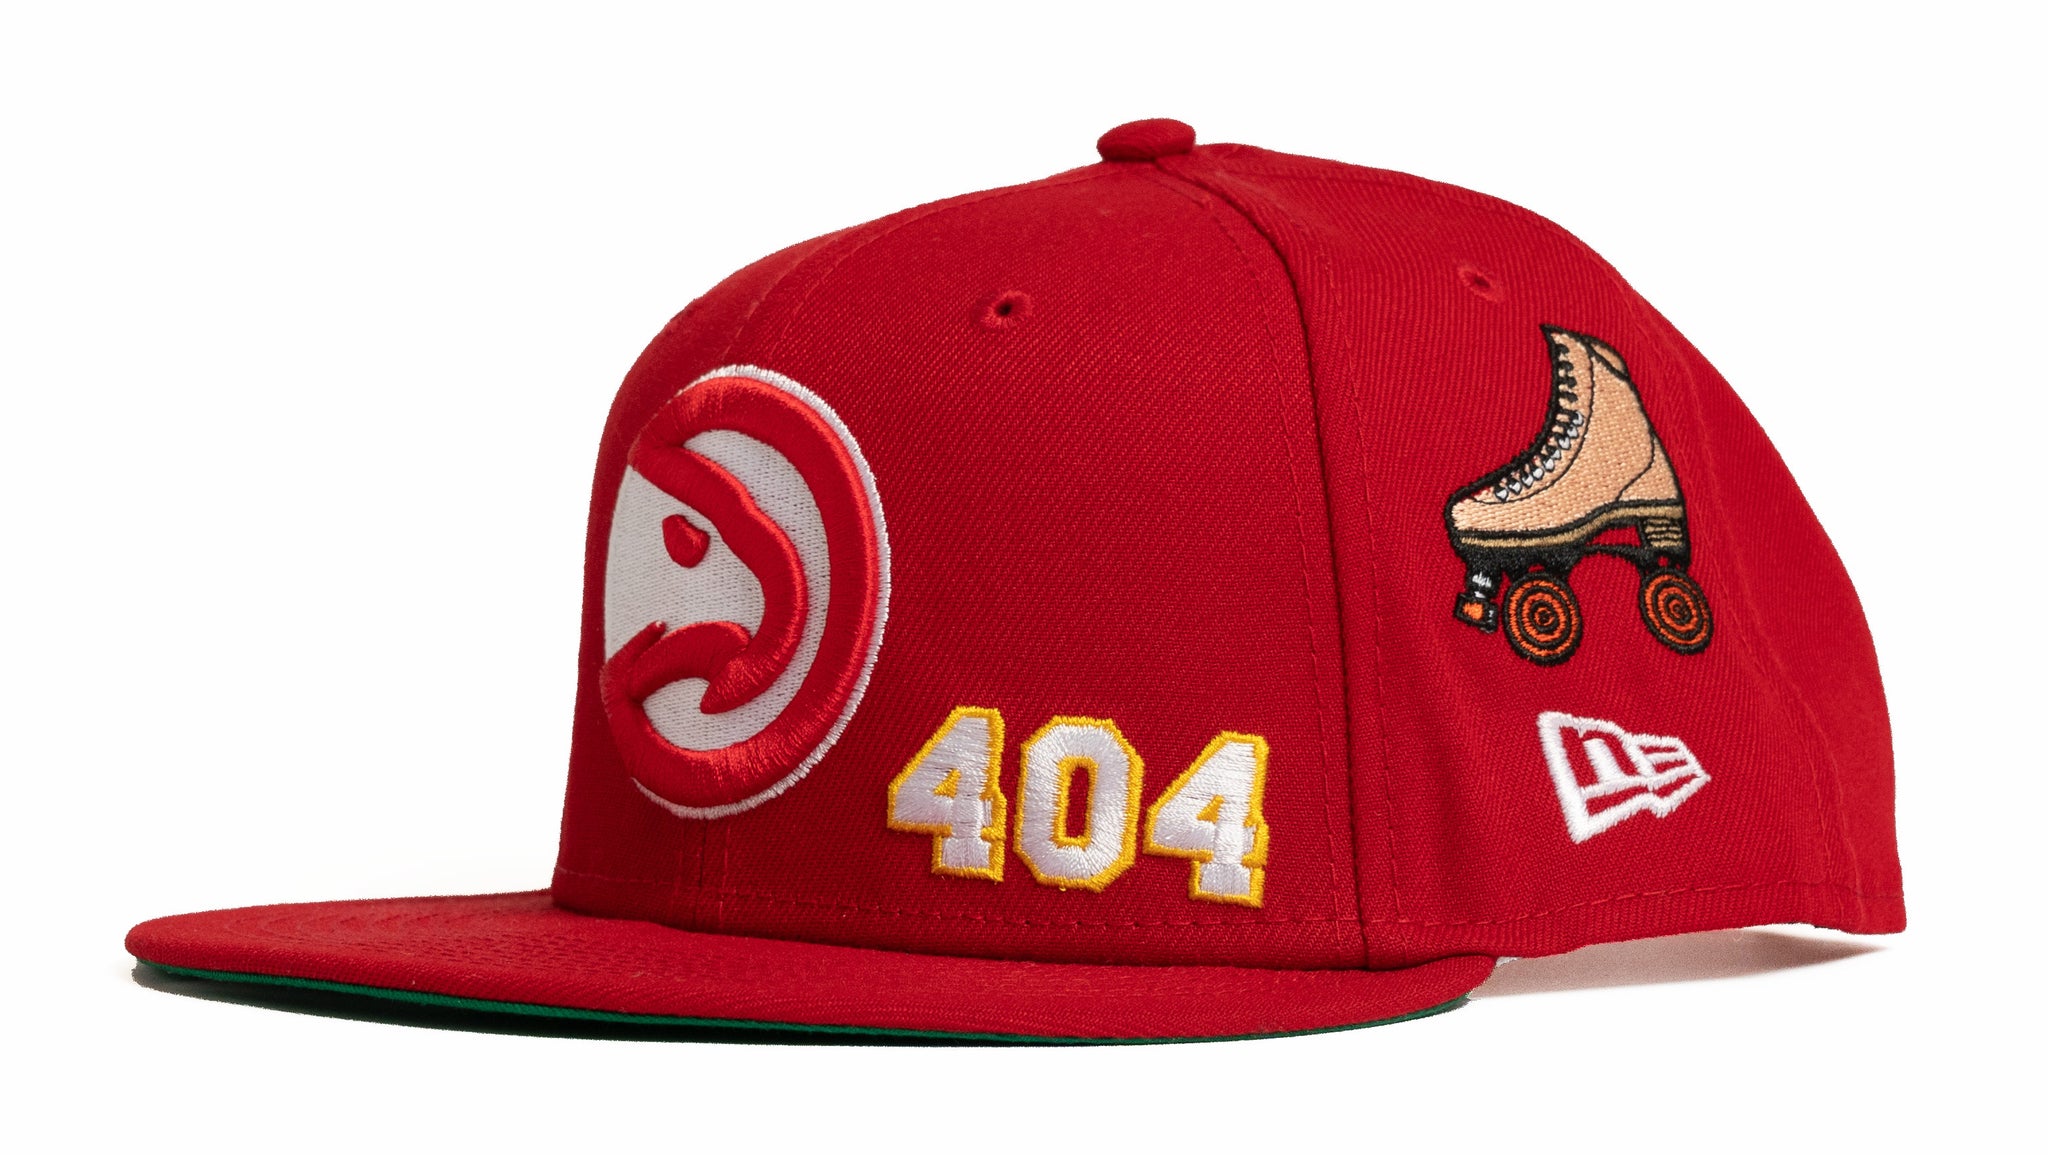 New Era Atlanta Hawks Basic 9FIFTY Snapback Cap - Red